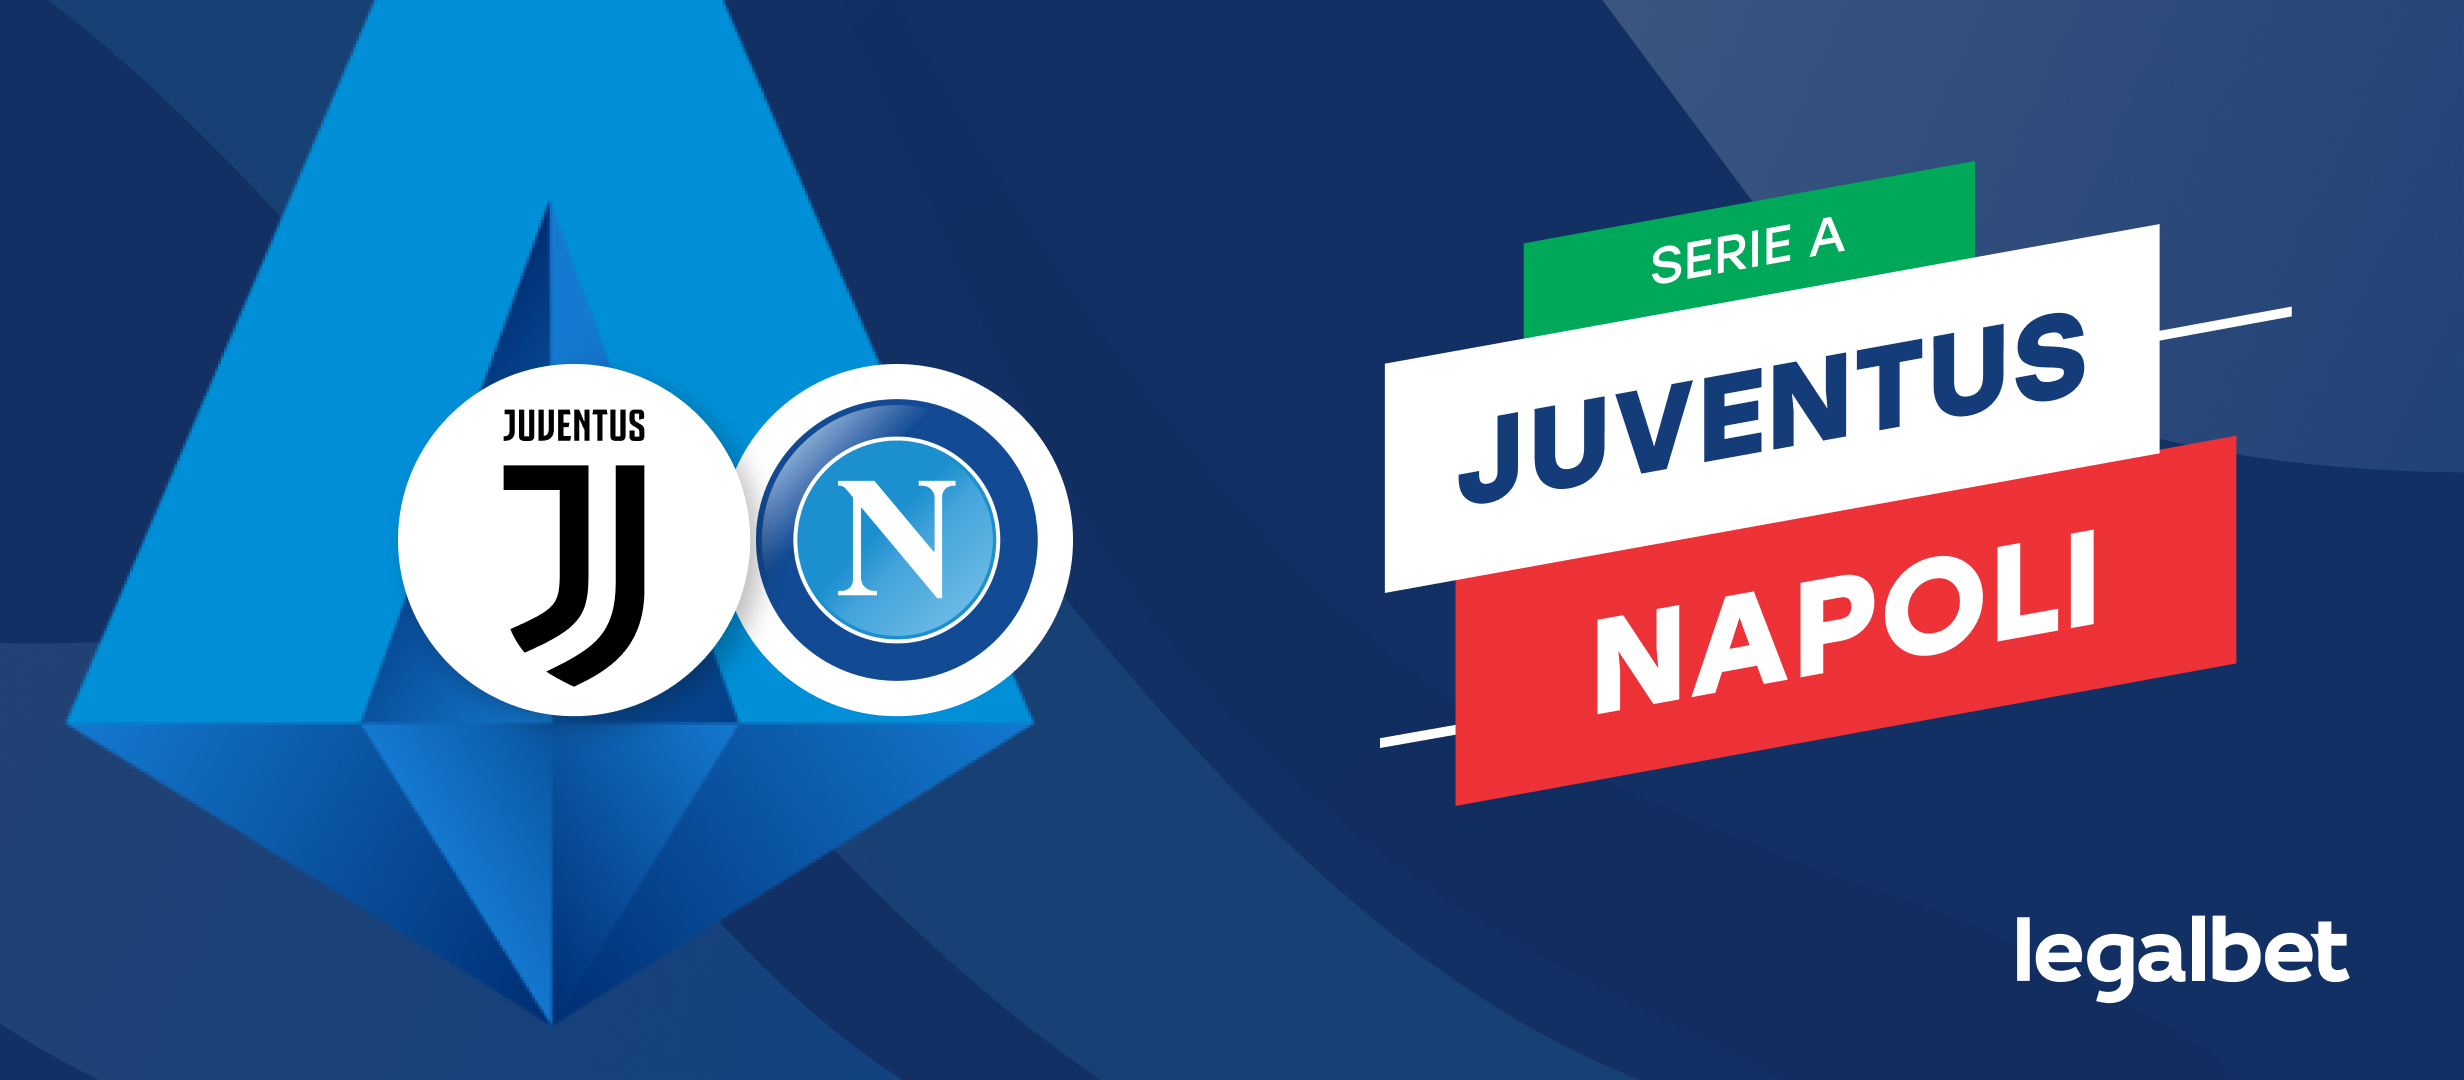 Apuestas y cuotas Juventus - Napoli, Serie A 2021/22